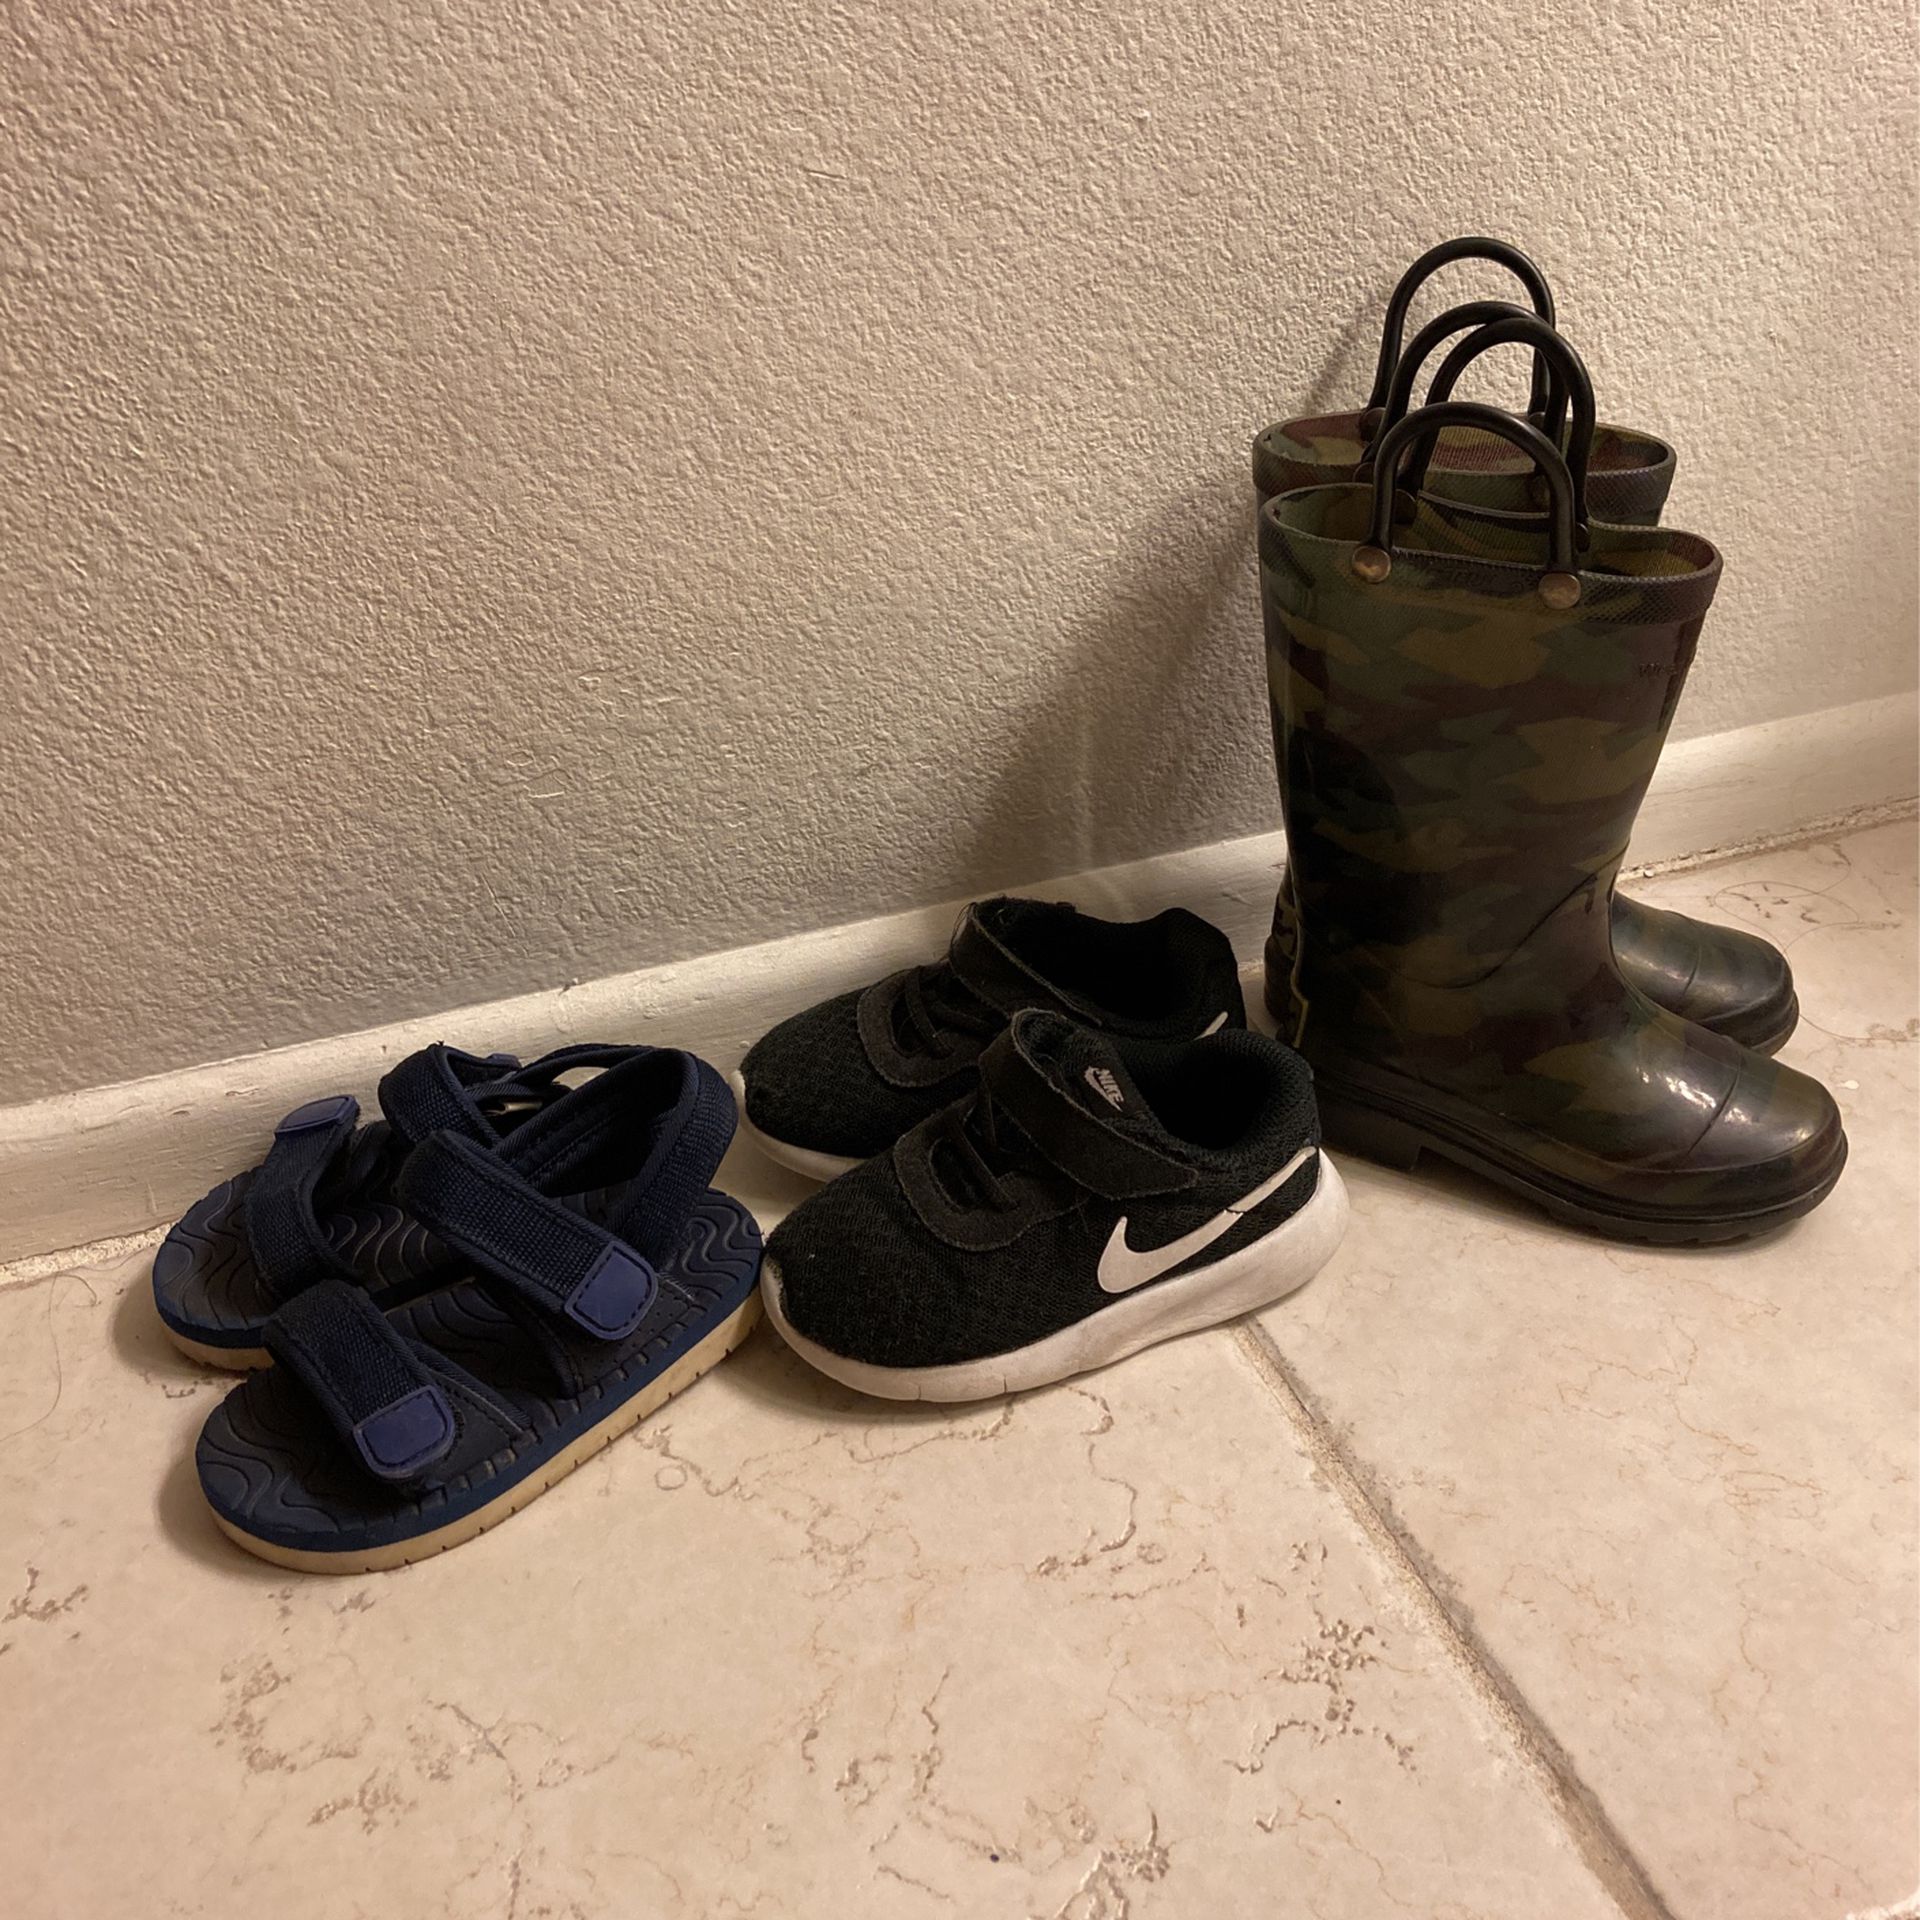 3 Pair Boy Shoes Rain Boots Sandals